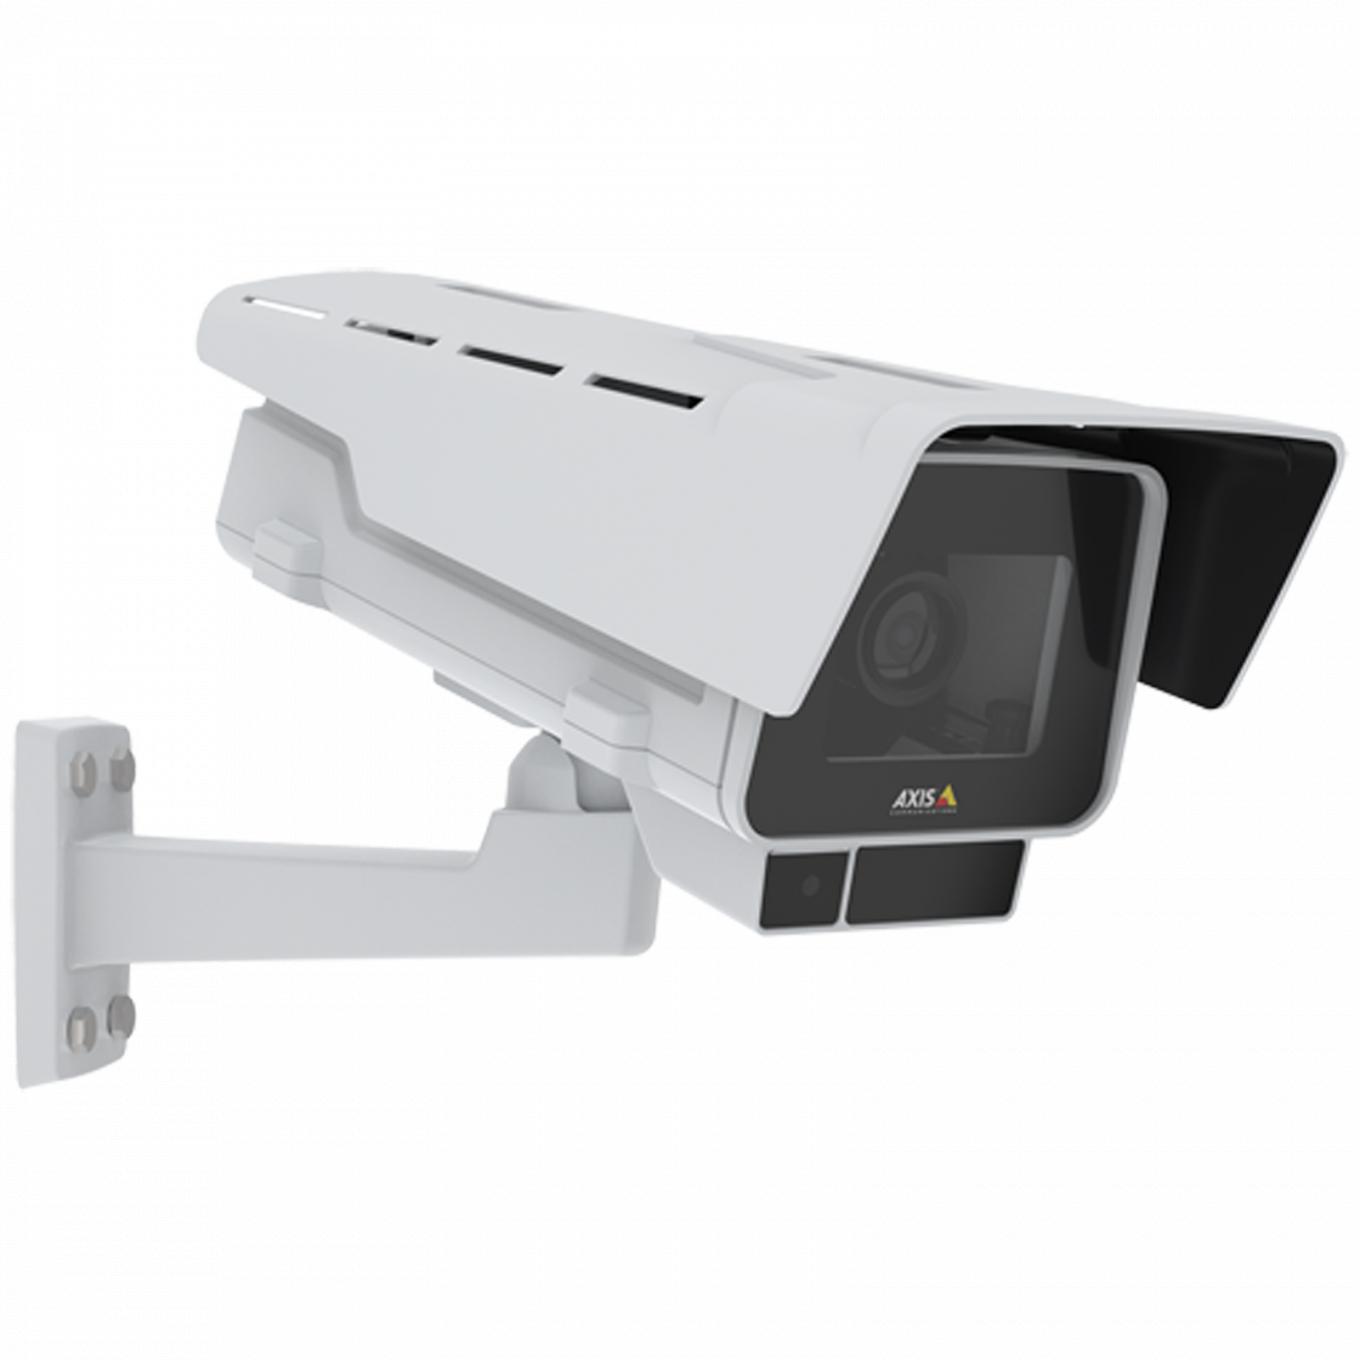 La caméra IP AXIS P1378-LE IP Camera dispose de la stabilisation d'image électronique et d'OptimizedIR. Le produit est vu depuis son angle droit.